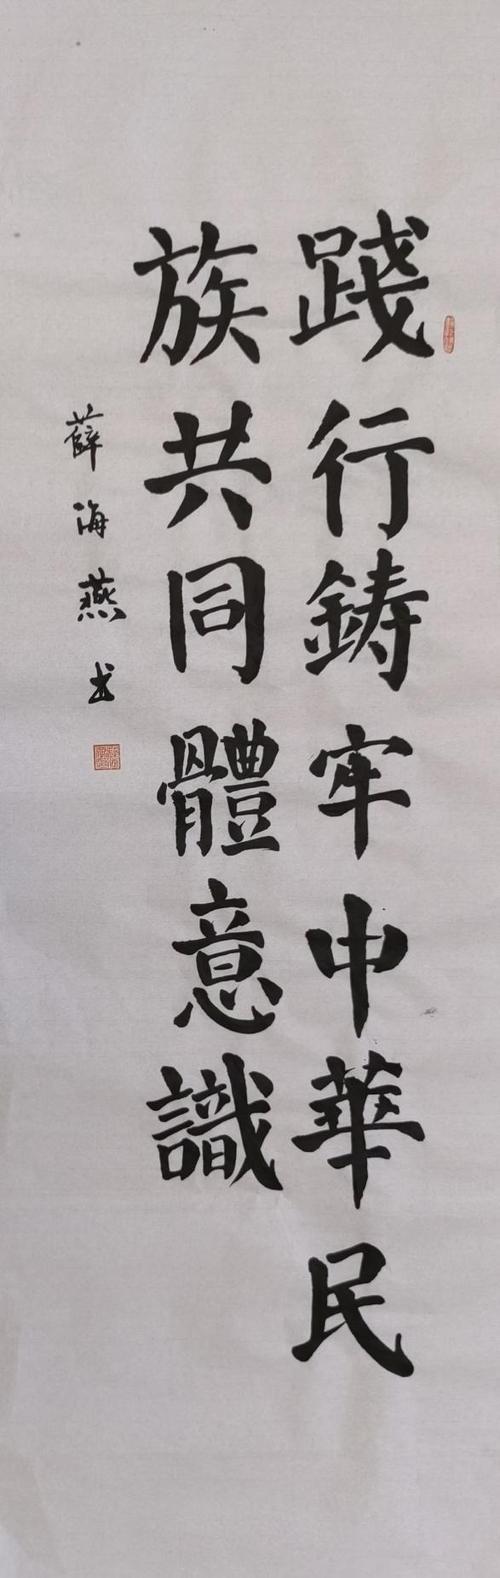 氛围,区文联组织广大文艺创作者以"铸牢中华民族共同体意识"为主题